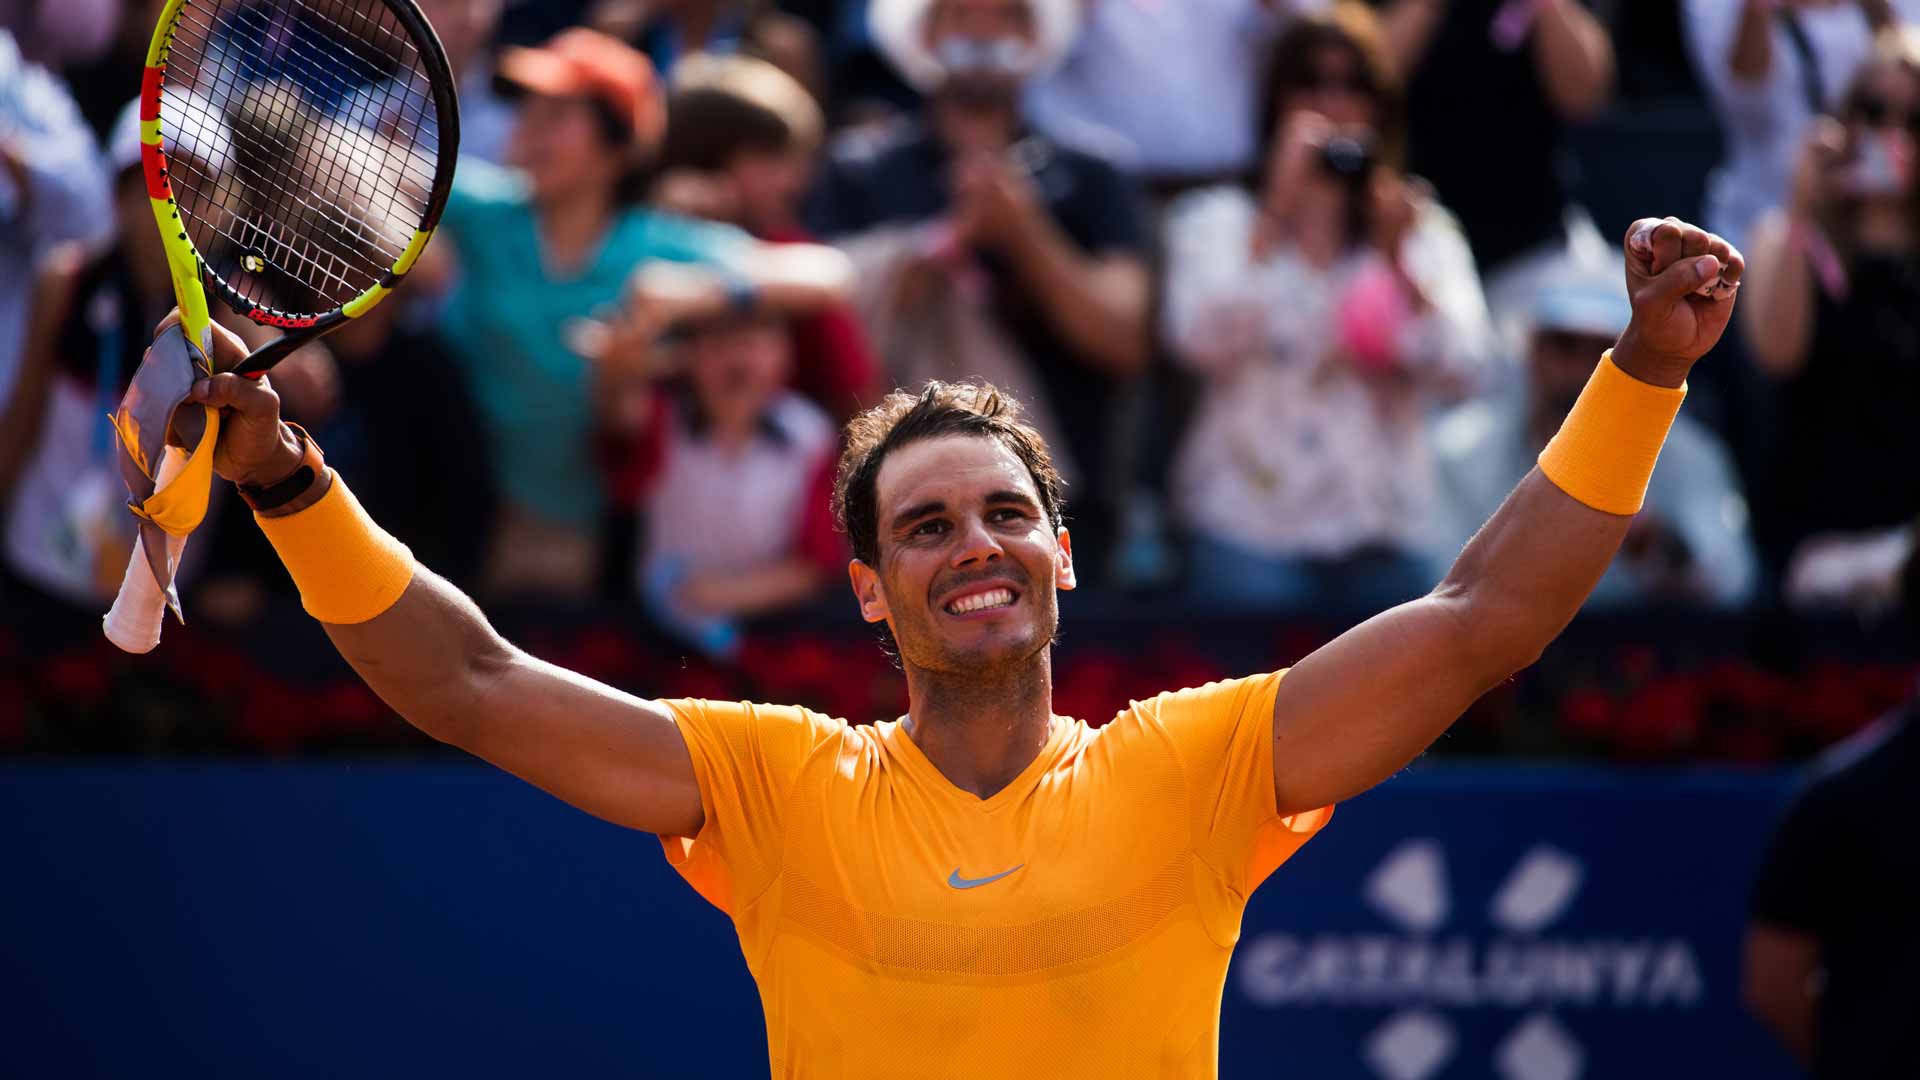 Hình ảnh: Ai sẽ đánh bại được Nadal tại Madrid Master?